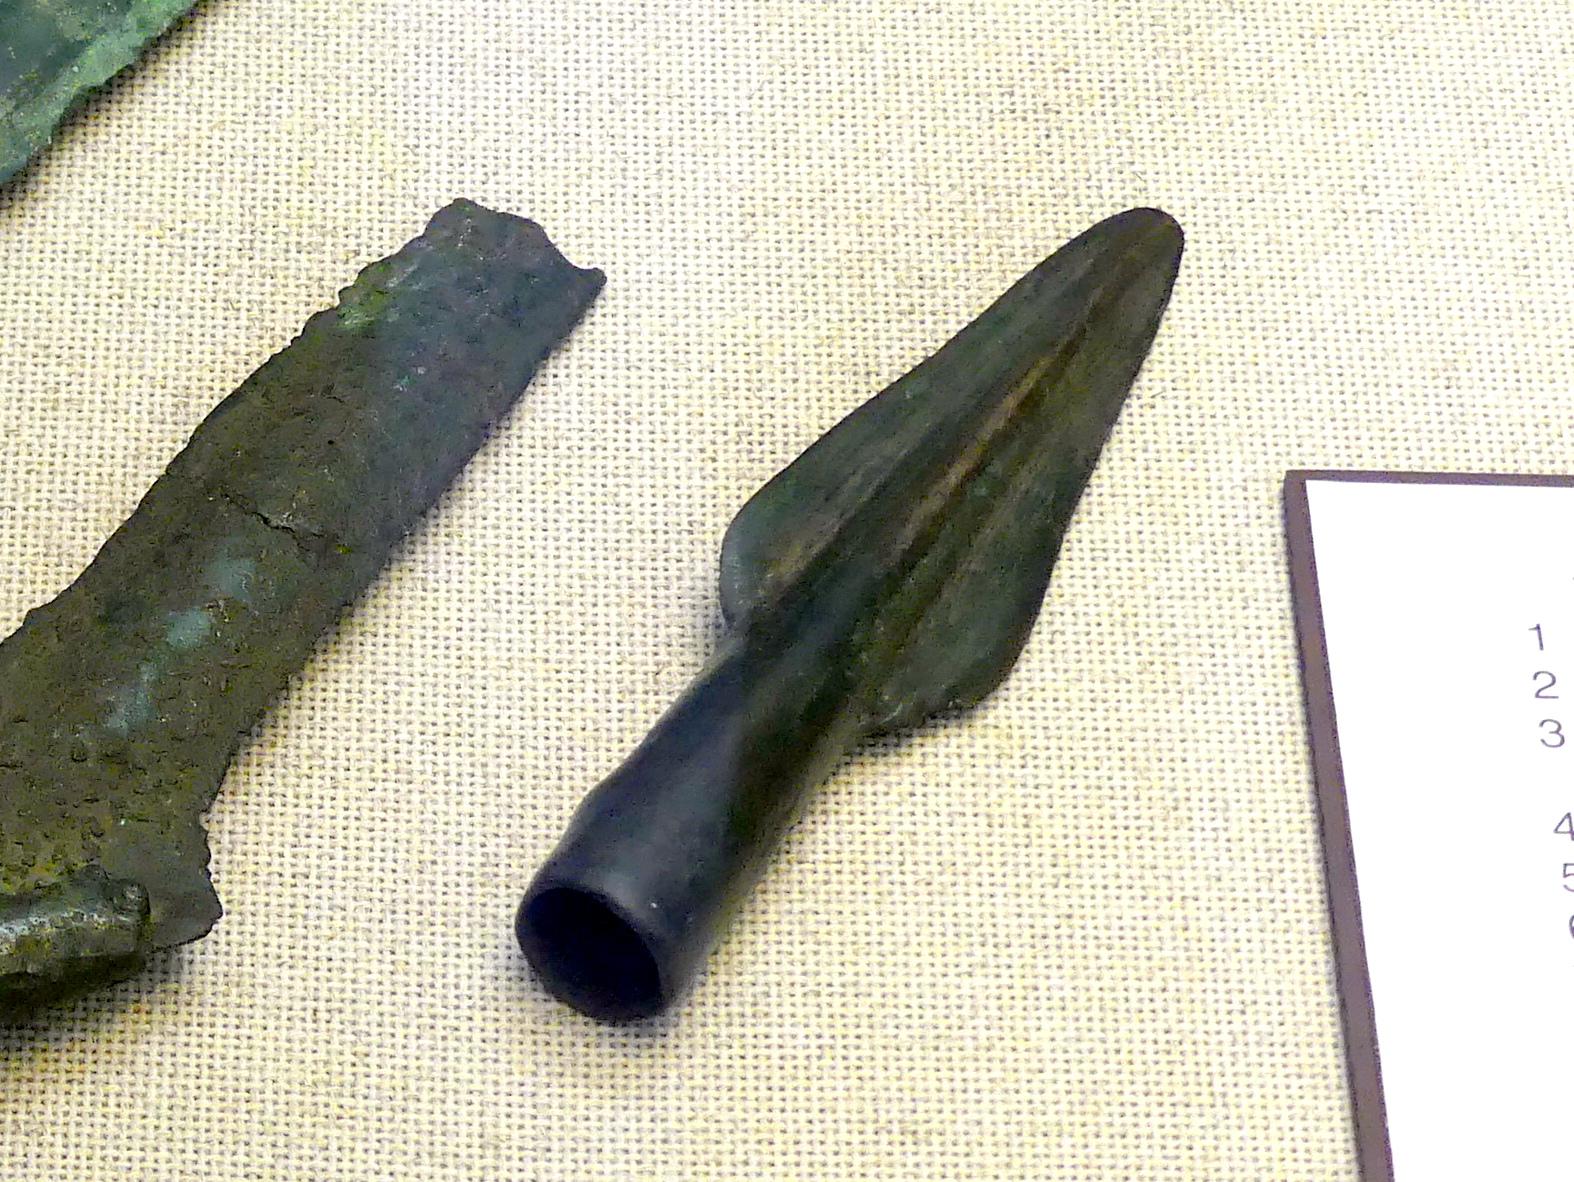 Lanzenspitze, Mittlere Bronzezeit, 3000 - 1300 v. Chr., Bild 1/2